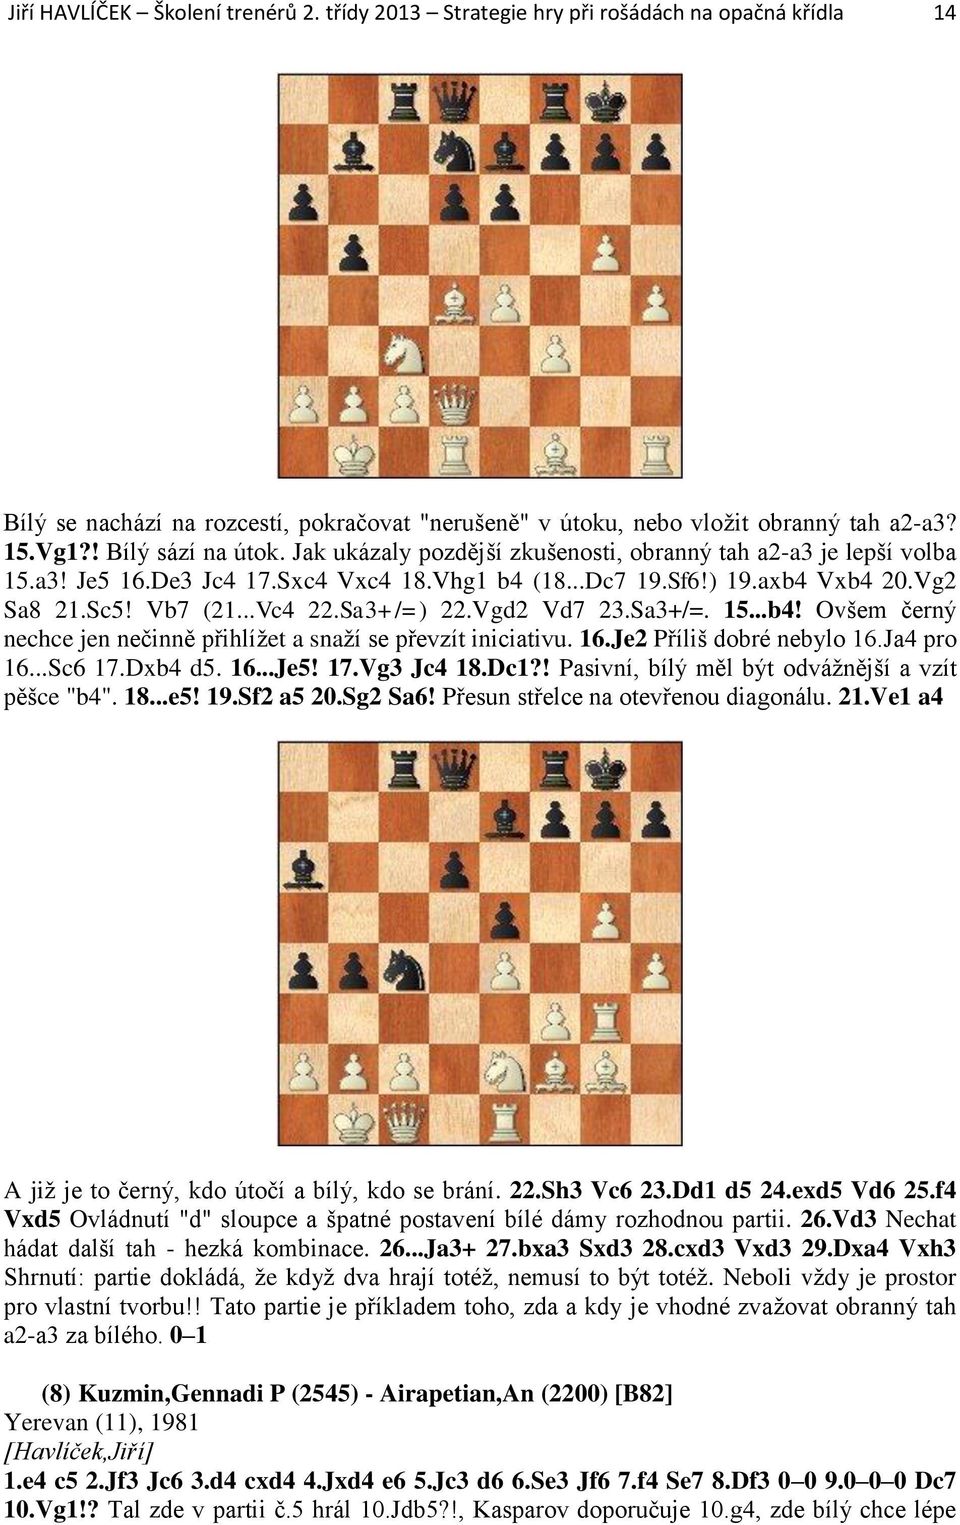 Sa3+/=) 22.Vgd2 Vd7 23.Sa3+/=. 15...b4! Ovšem černý nechce jen nečinně přihlížet a snaží se převzít iniciativu. 16.Je2 Příliš dobré nebylo 16.Ja4 pro 16...Sc6 17.Dxb4 d5. 16...Je5! 17.Vg3 Jc4 18.Dc1?